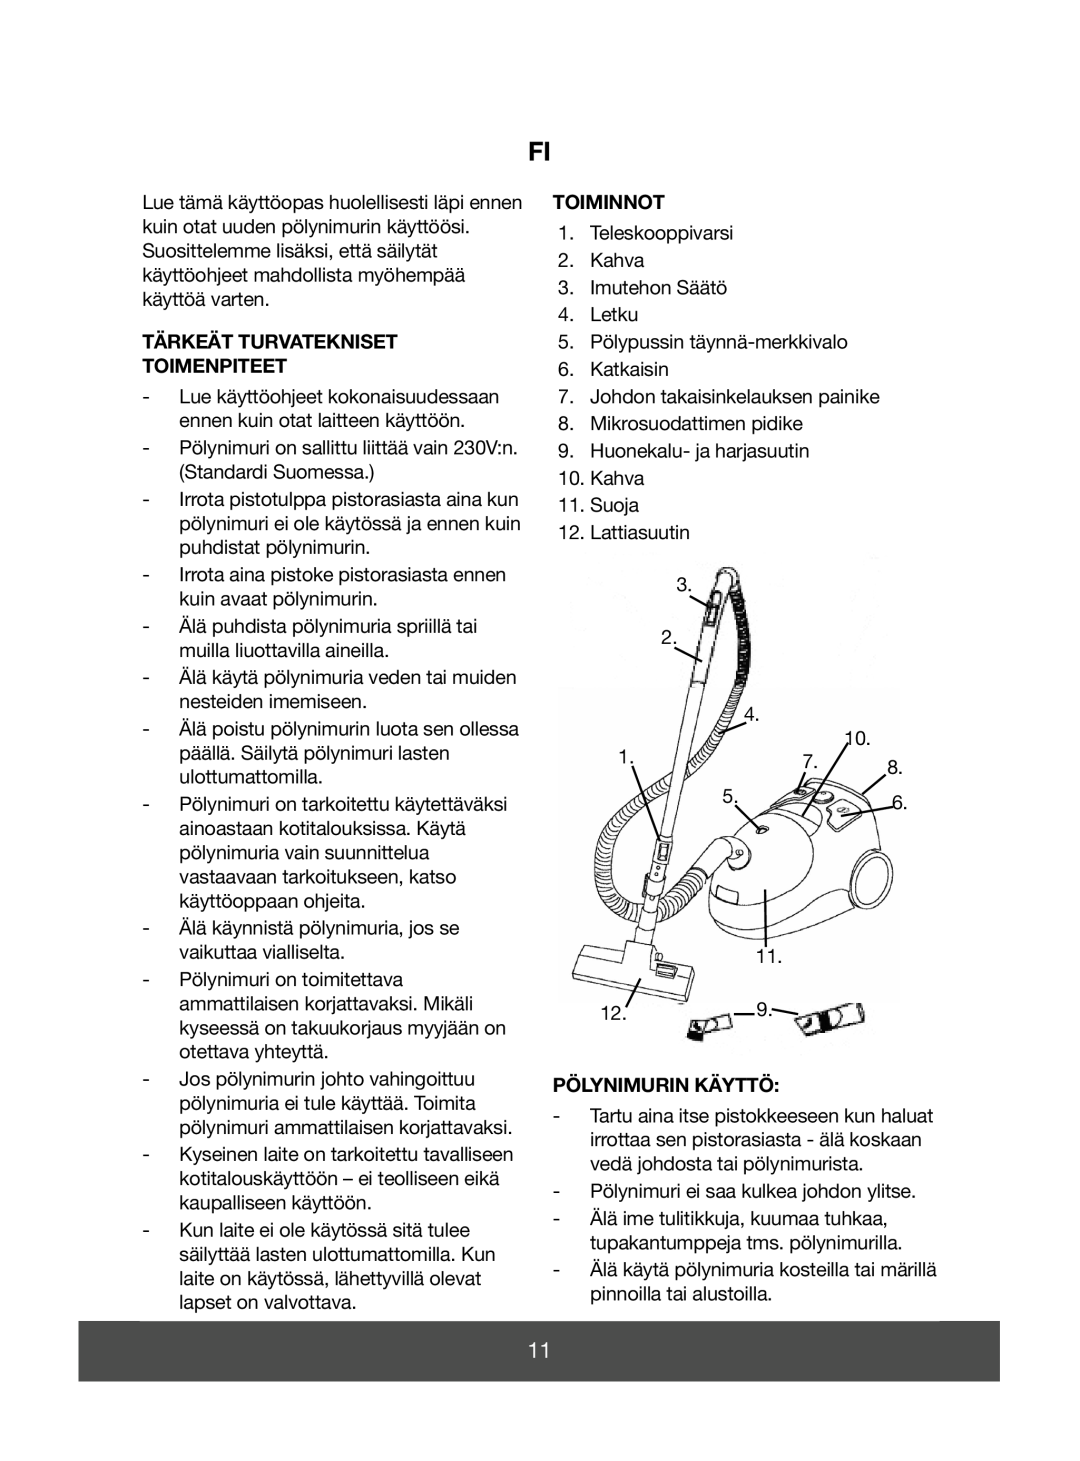 Melissa 640-070 manual Tärkeät Turvatekniset Toimenpiteet, Toiminnot, Pölynimurin Käyttö 